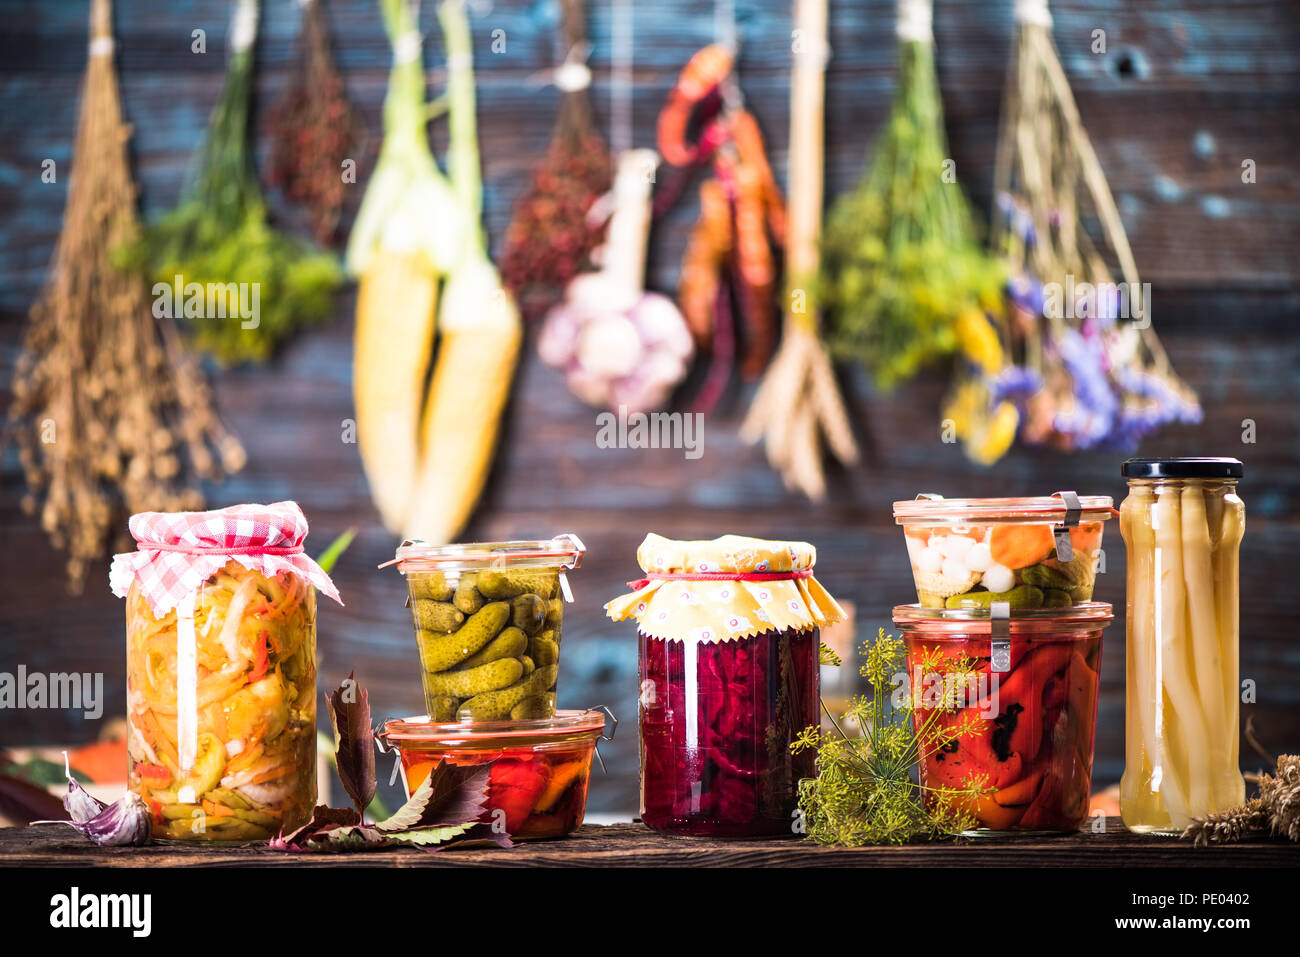 Decapati marinato verdure fermentate su scaffali in cantina Foto Stock